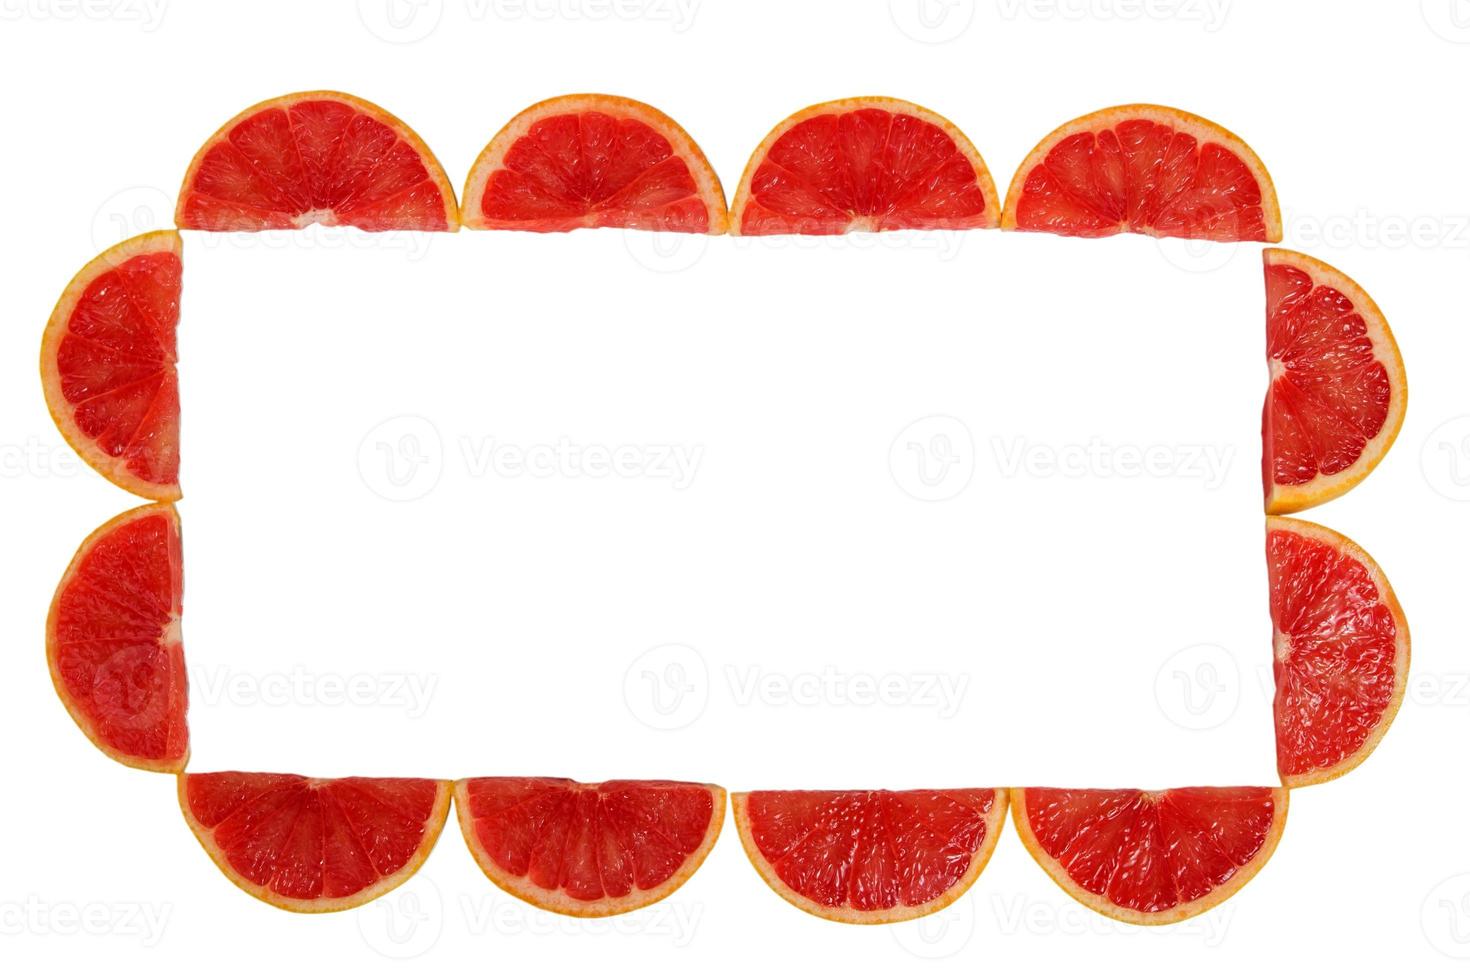 slice of grapefruit isolated on white background photo